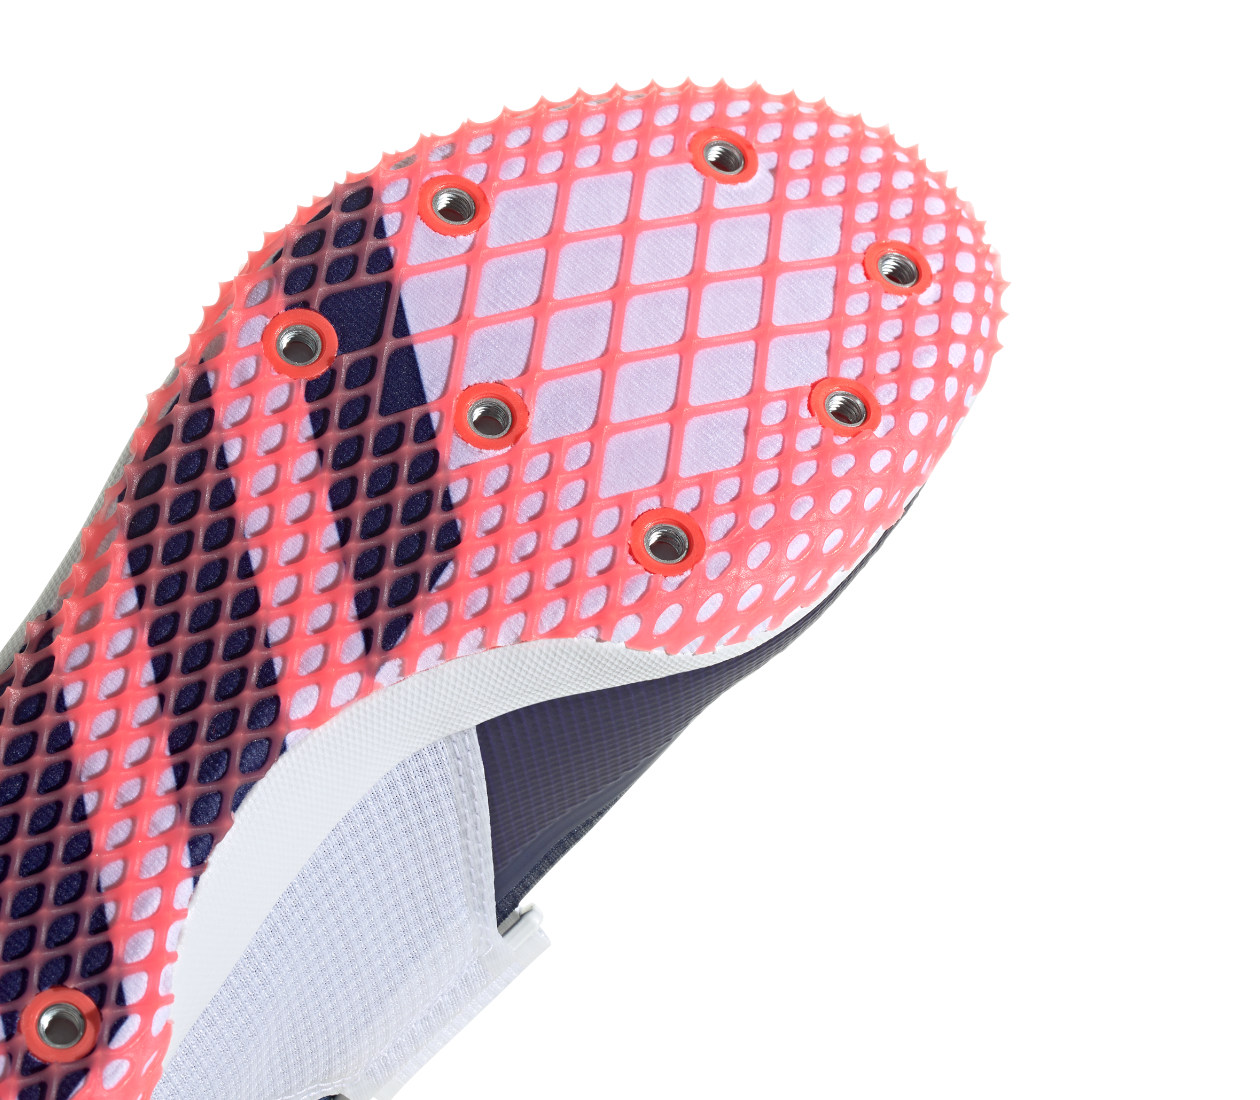 Adidas Adizero HJ (M) Scarpa chiodata da salto in alto | LBM Sport